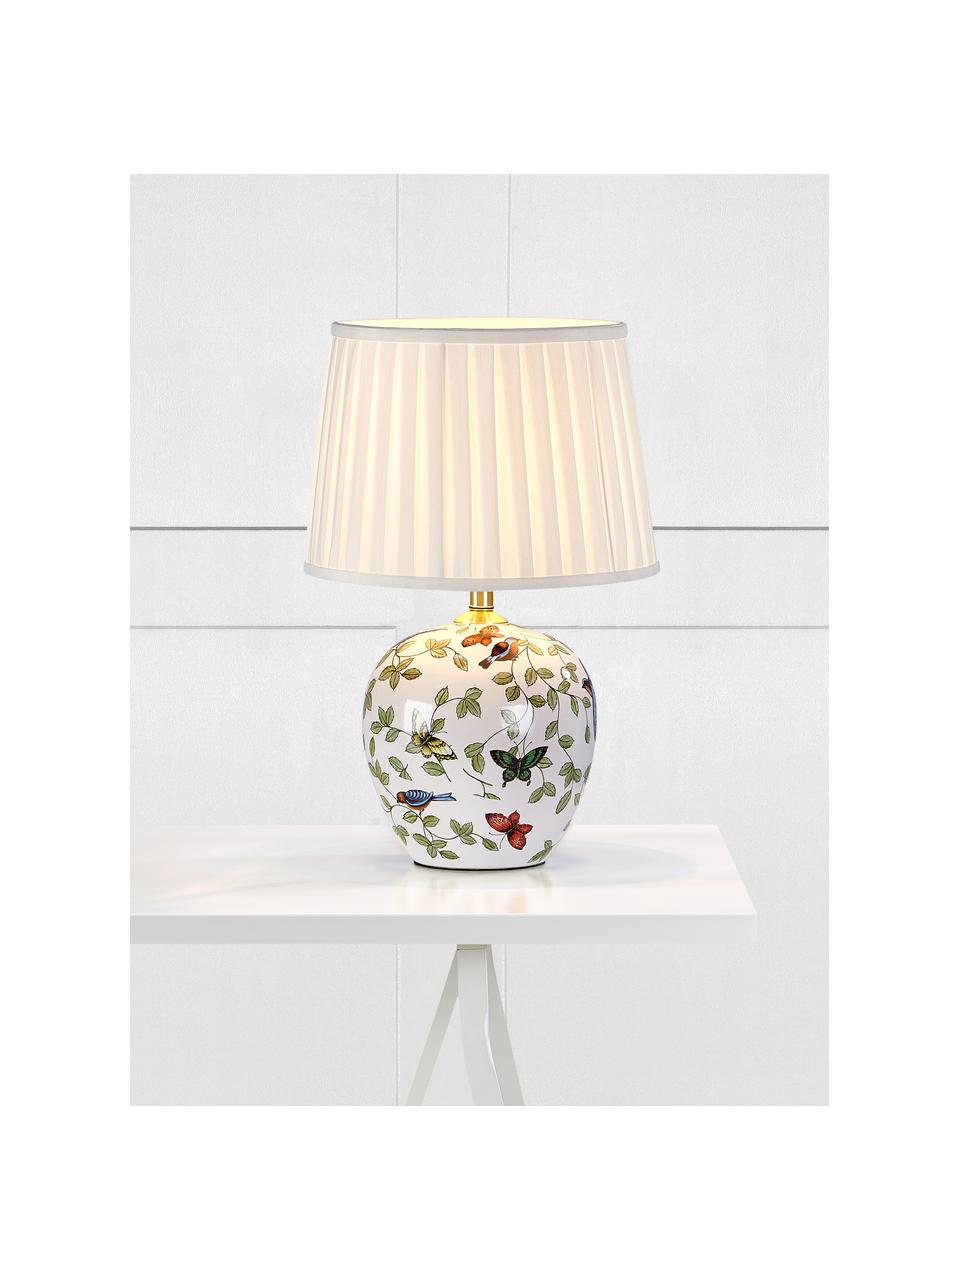 Keramik-Tischlampe Mansion, Lampenschirm: Textil, Lampenfuß: Keramik, Weiß, Bunt, Ø 31 x H 45 cm